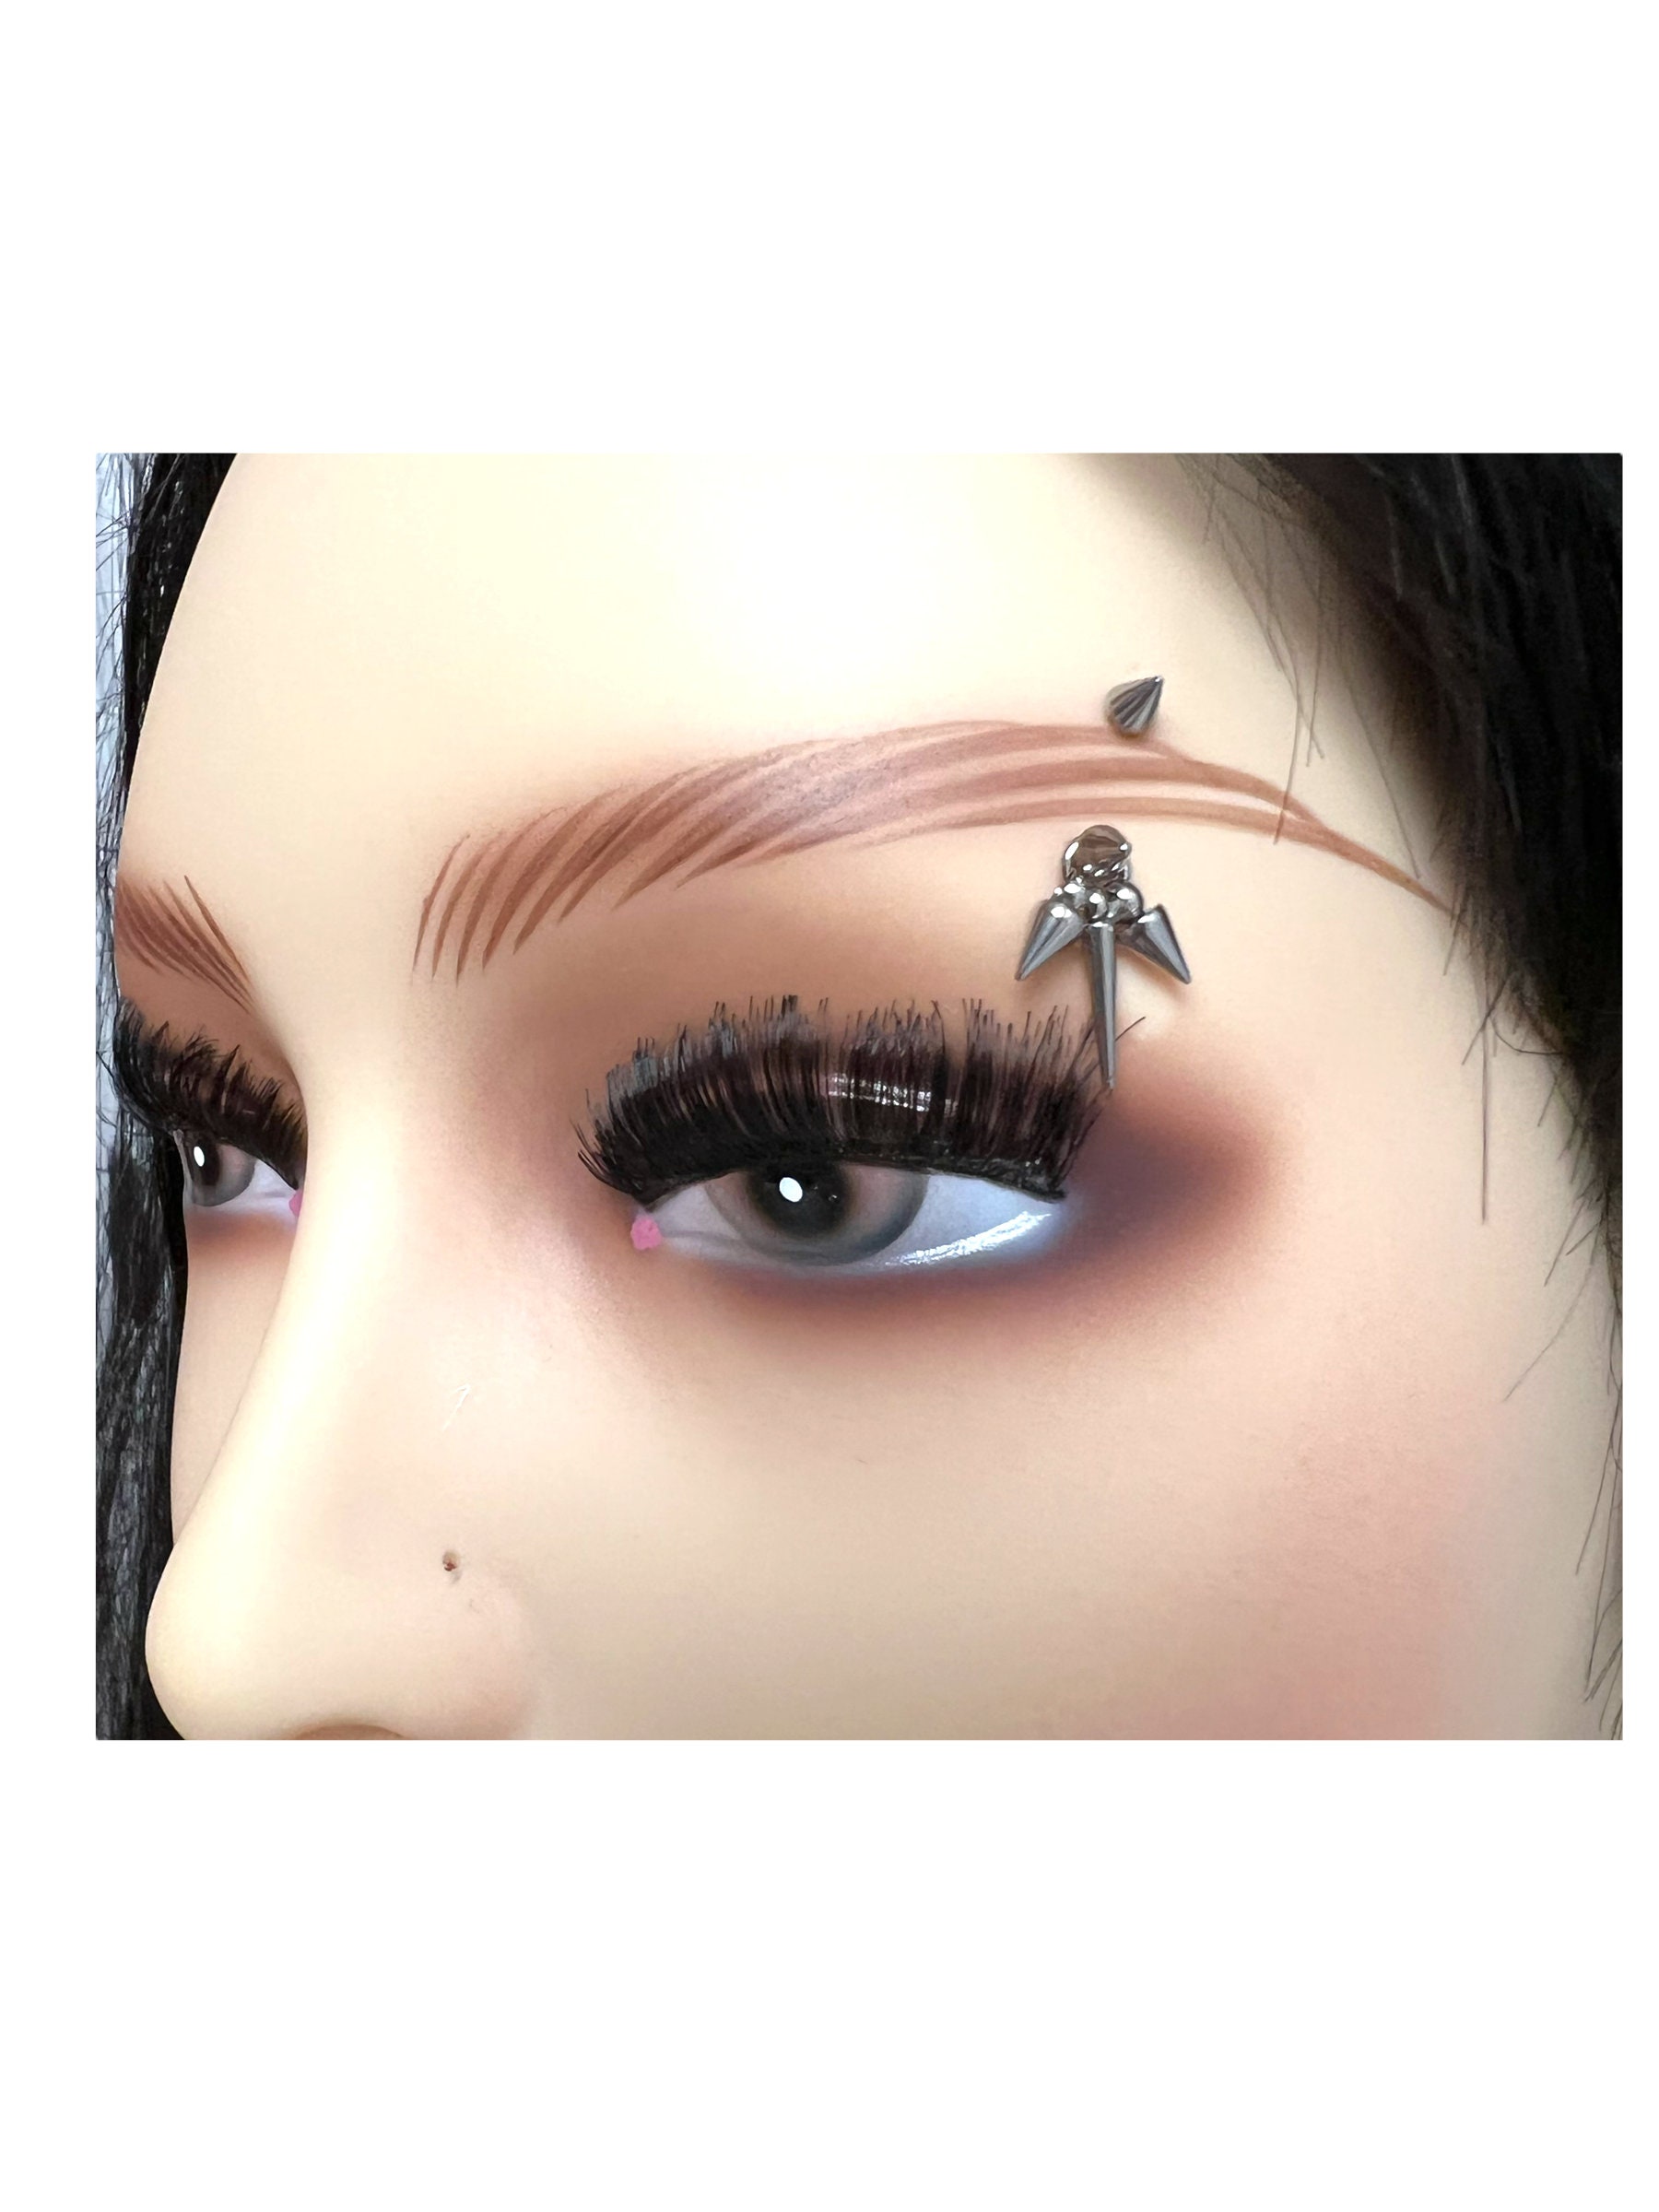 Eyebrow Jewelry , Eyebrow Ring, Eyebrow Barbell, Eyebrow Bar